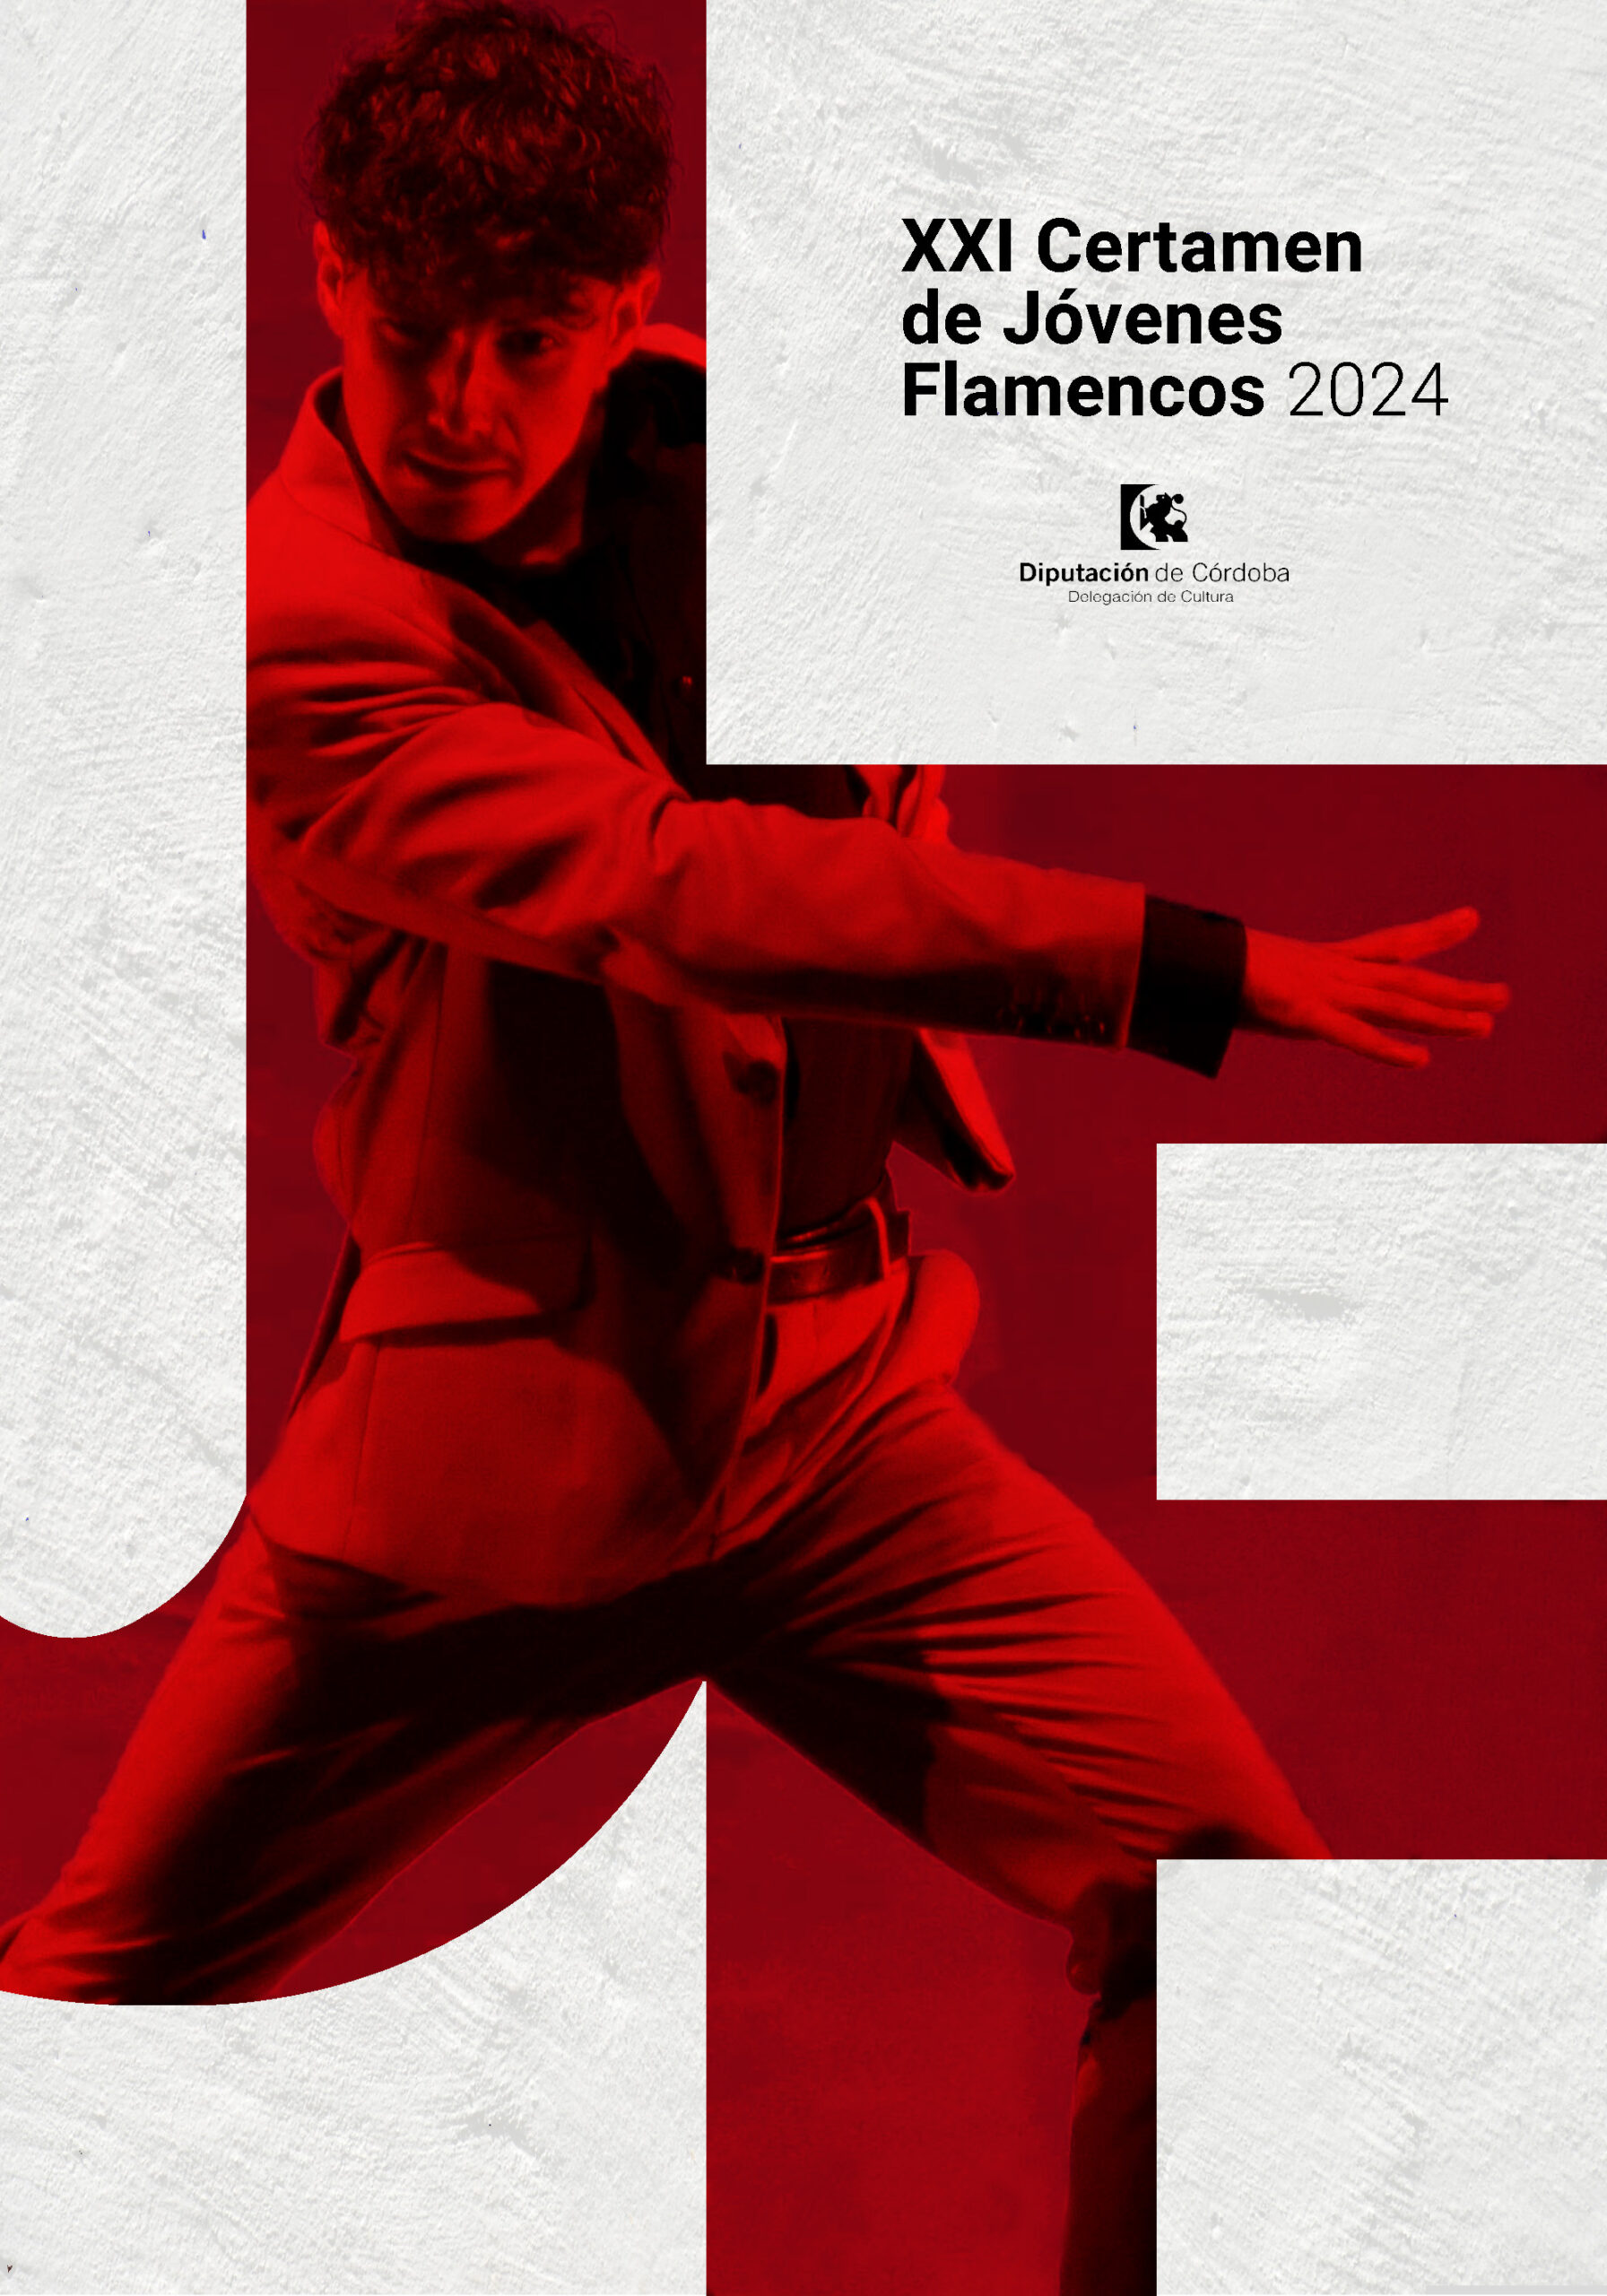 Abierto el plazo de solicitud para el XXI Certamen de Jóvenes Flamencos de la Diputación de Córdoba